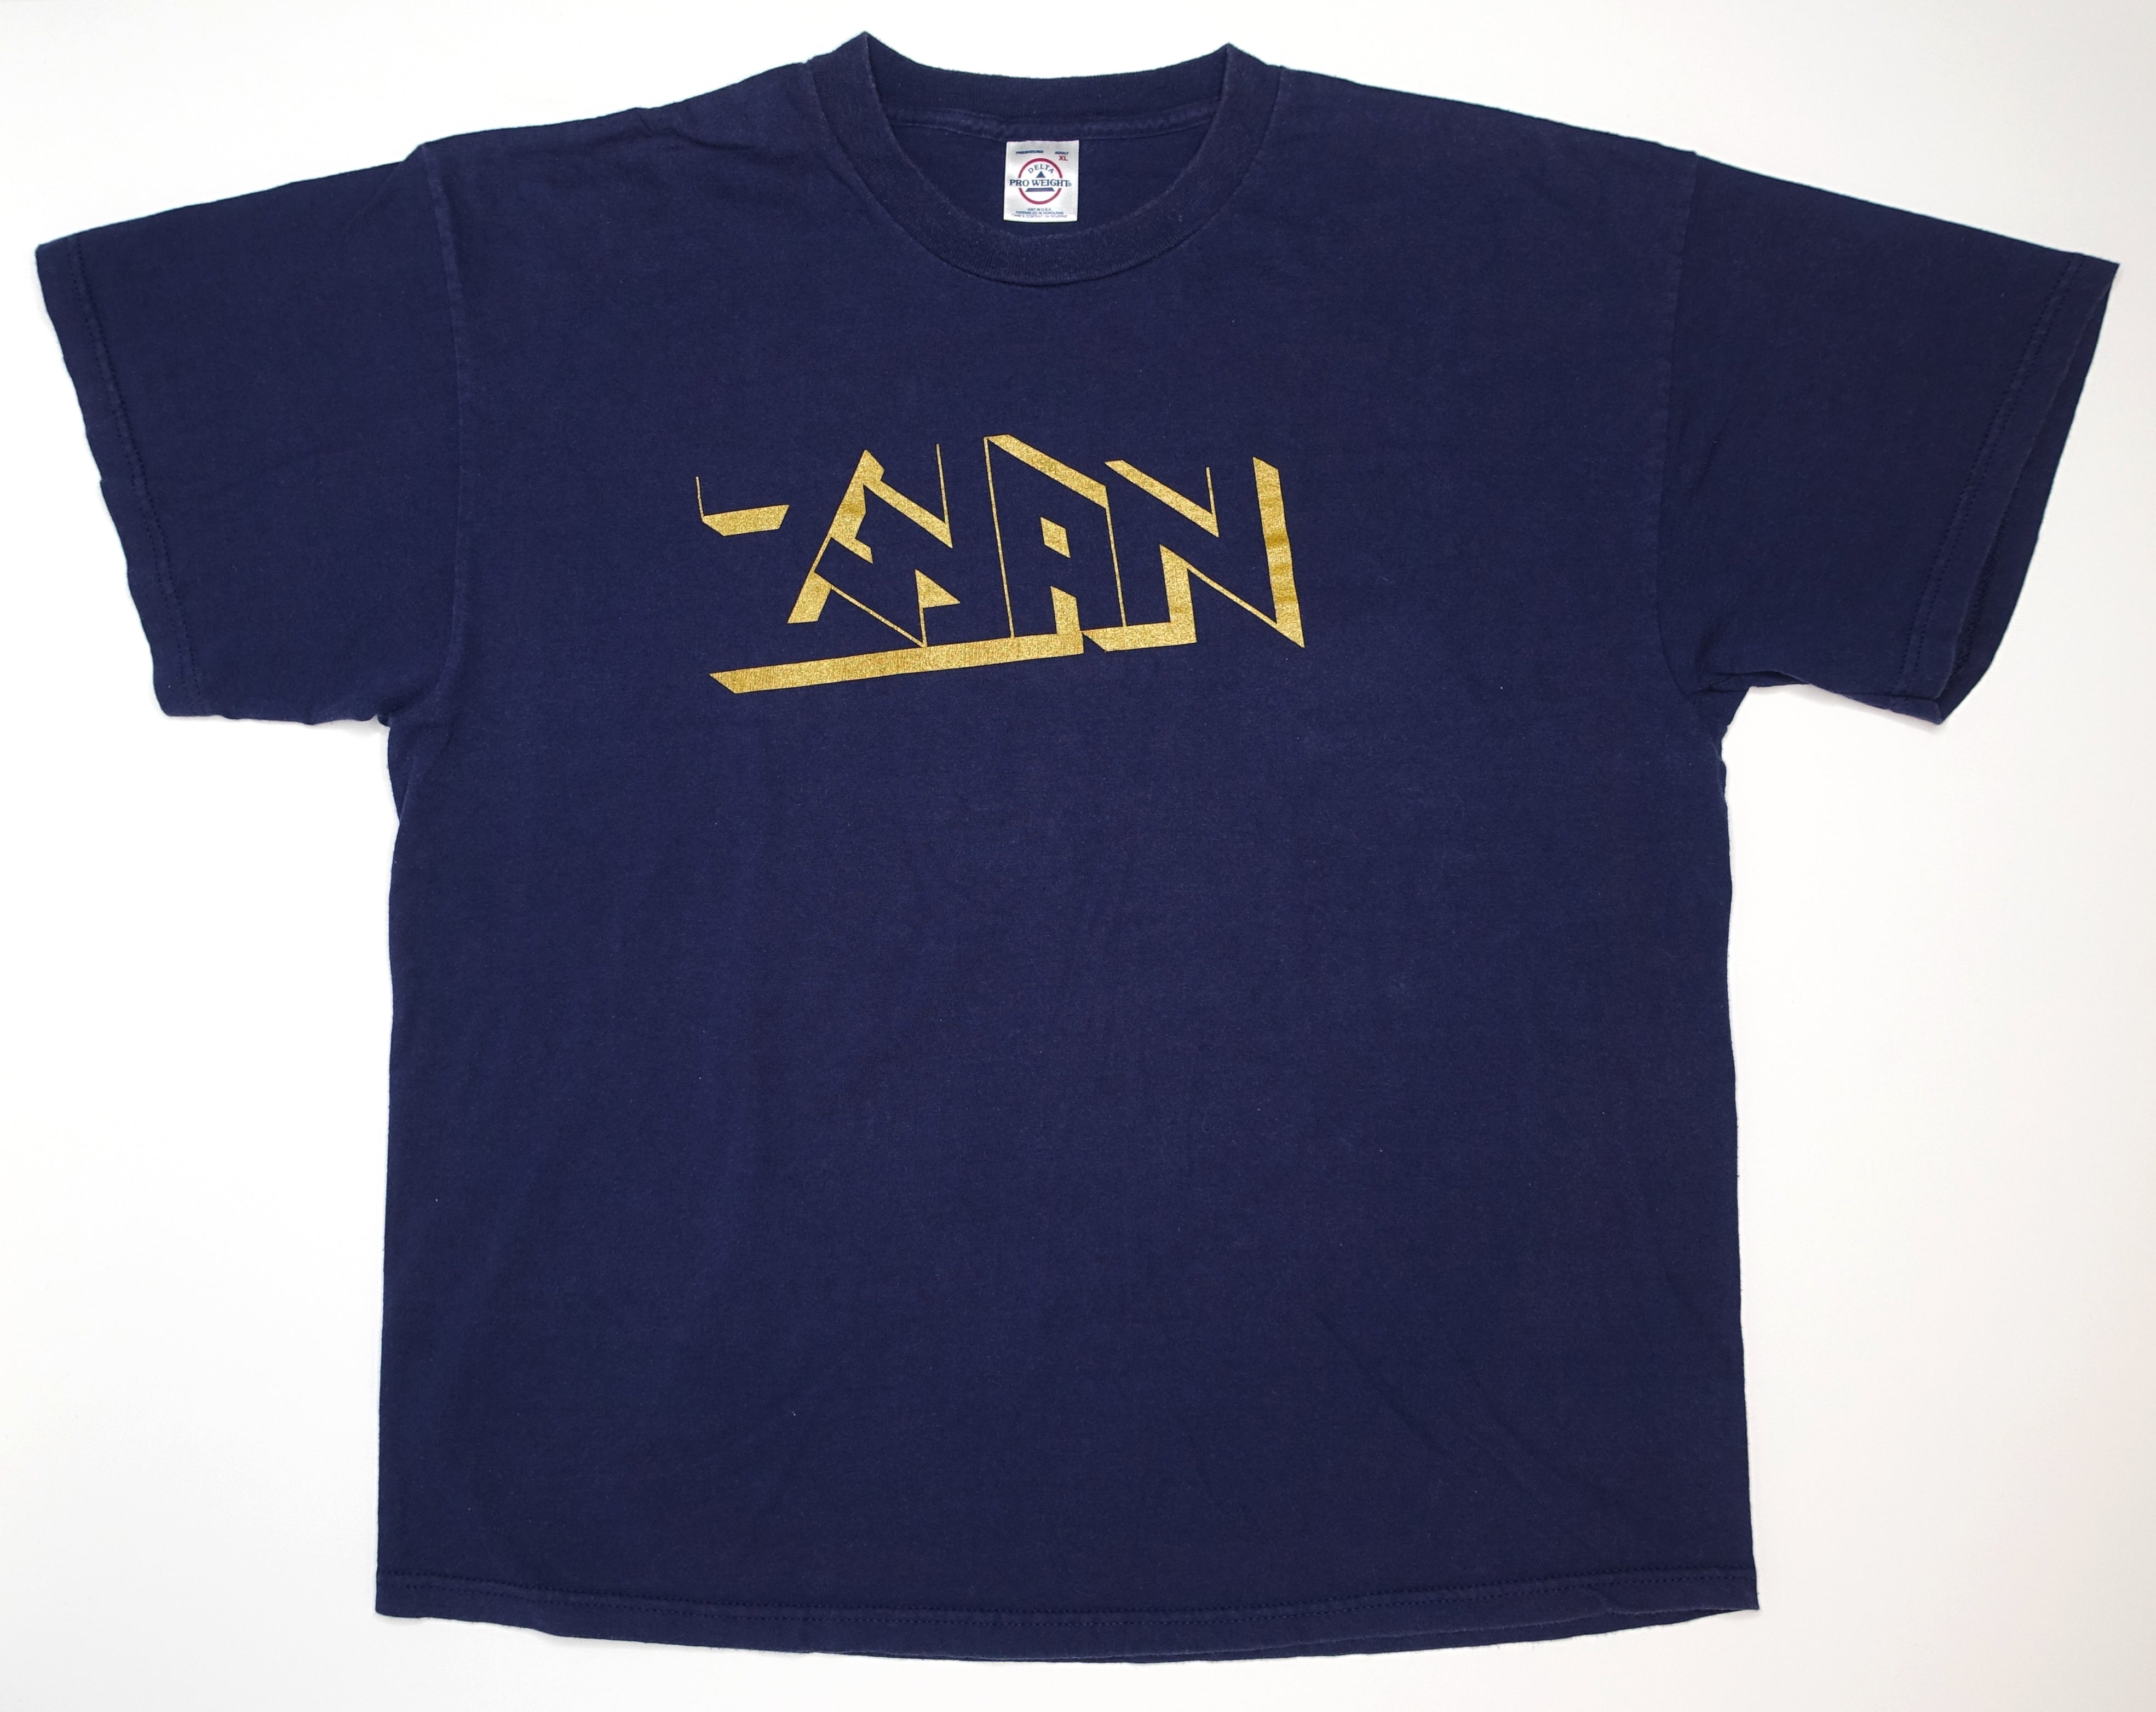 Zwan - Mystery Member 2003 Tour Shirt Size XL